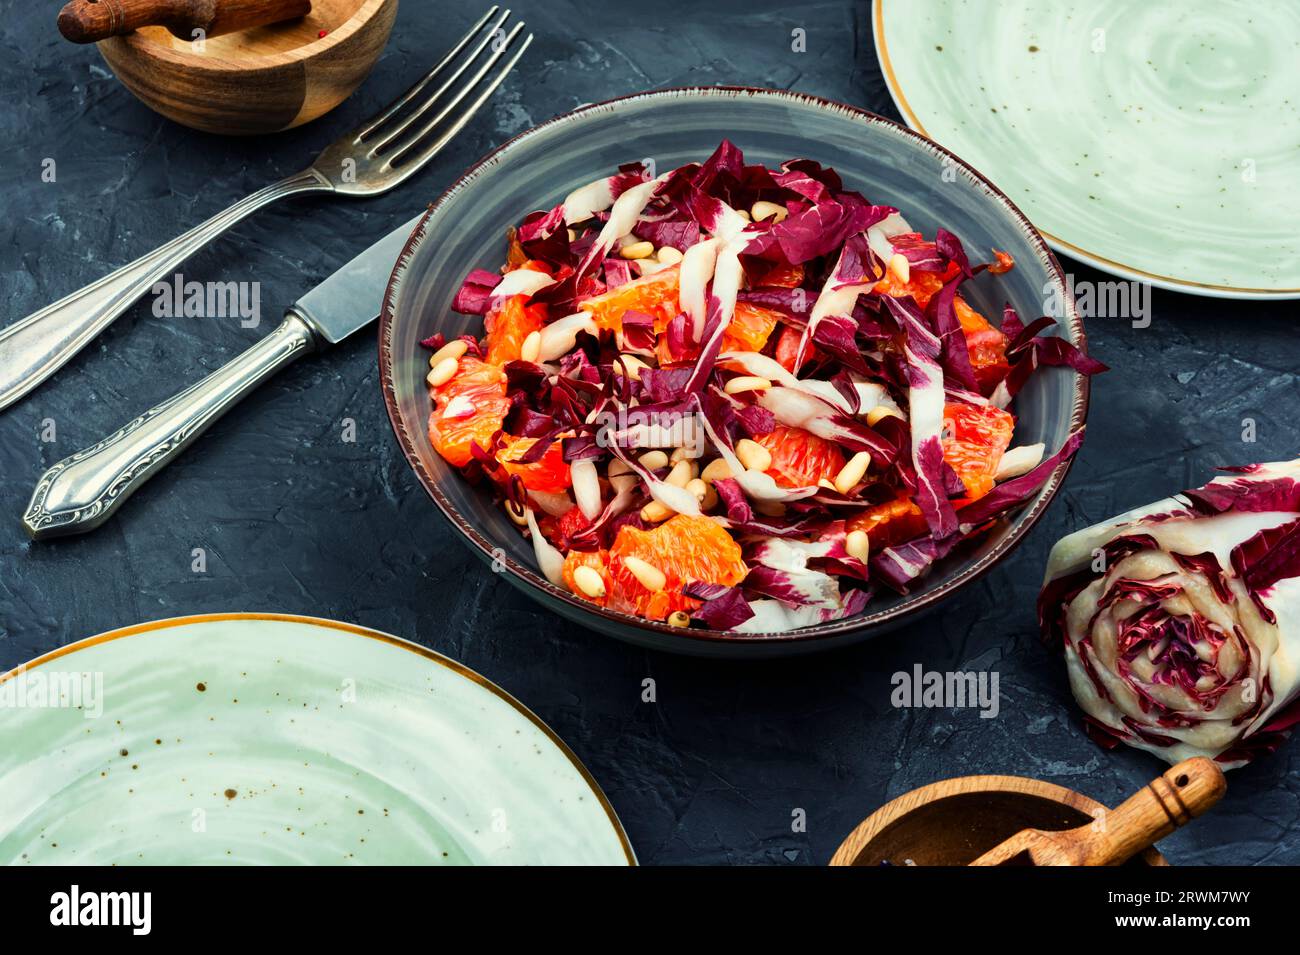 Salade fraîche avec chicorée, pamplemousse et pignons sur une assiette. Nourriture saine Banque D'Images